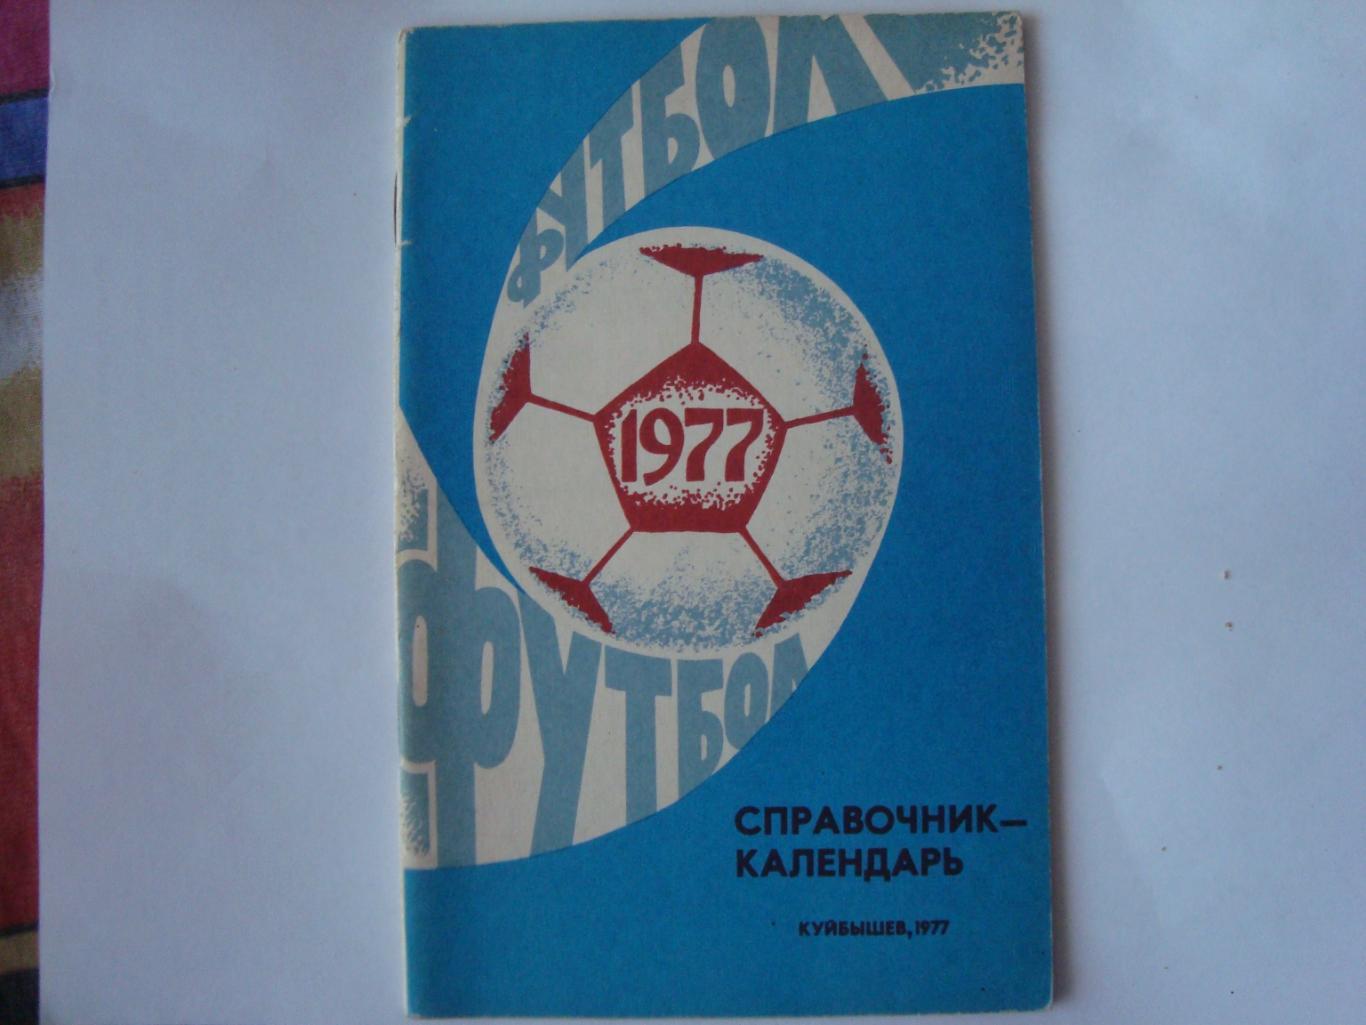 Футбол. Куйбышев 1977 год календарь - справочник